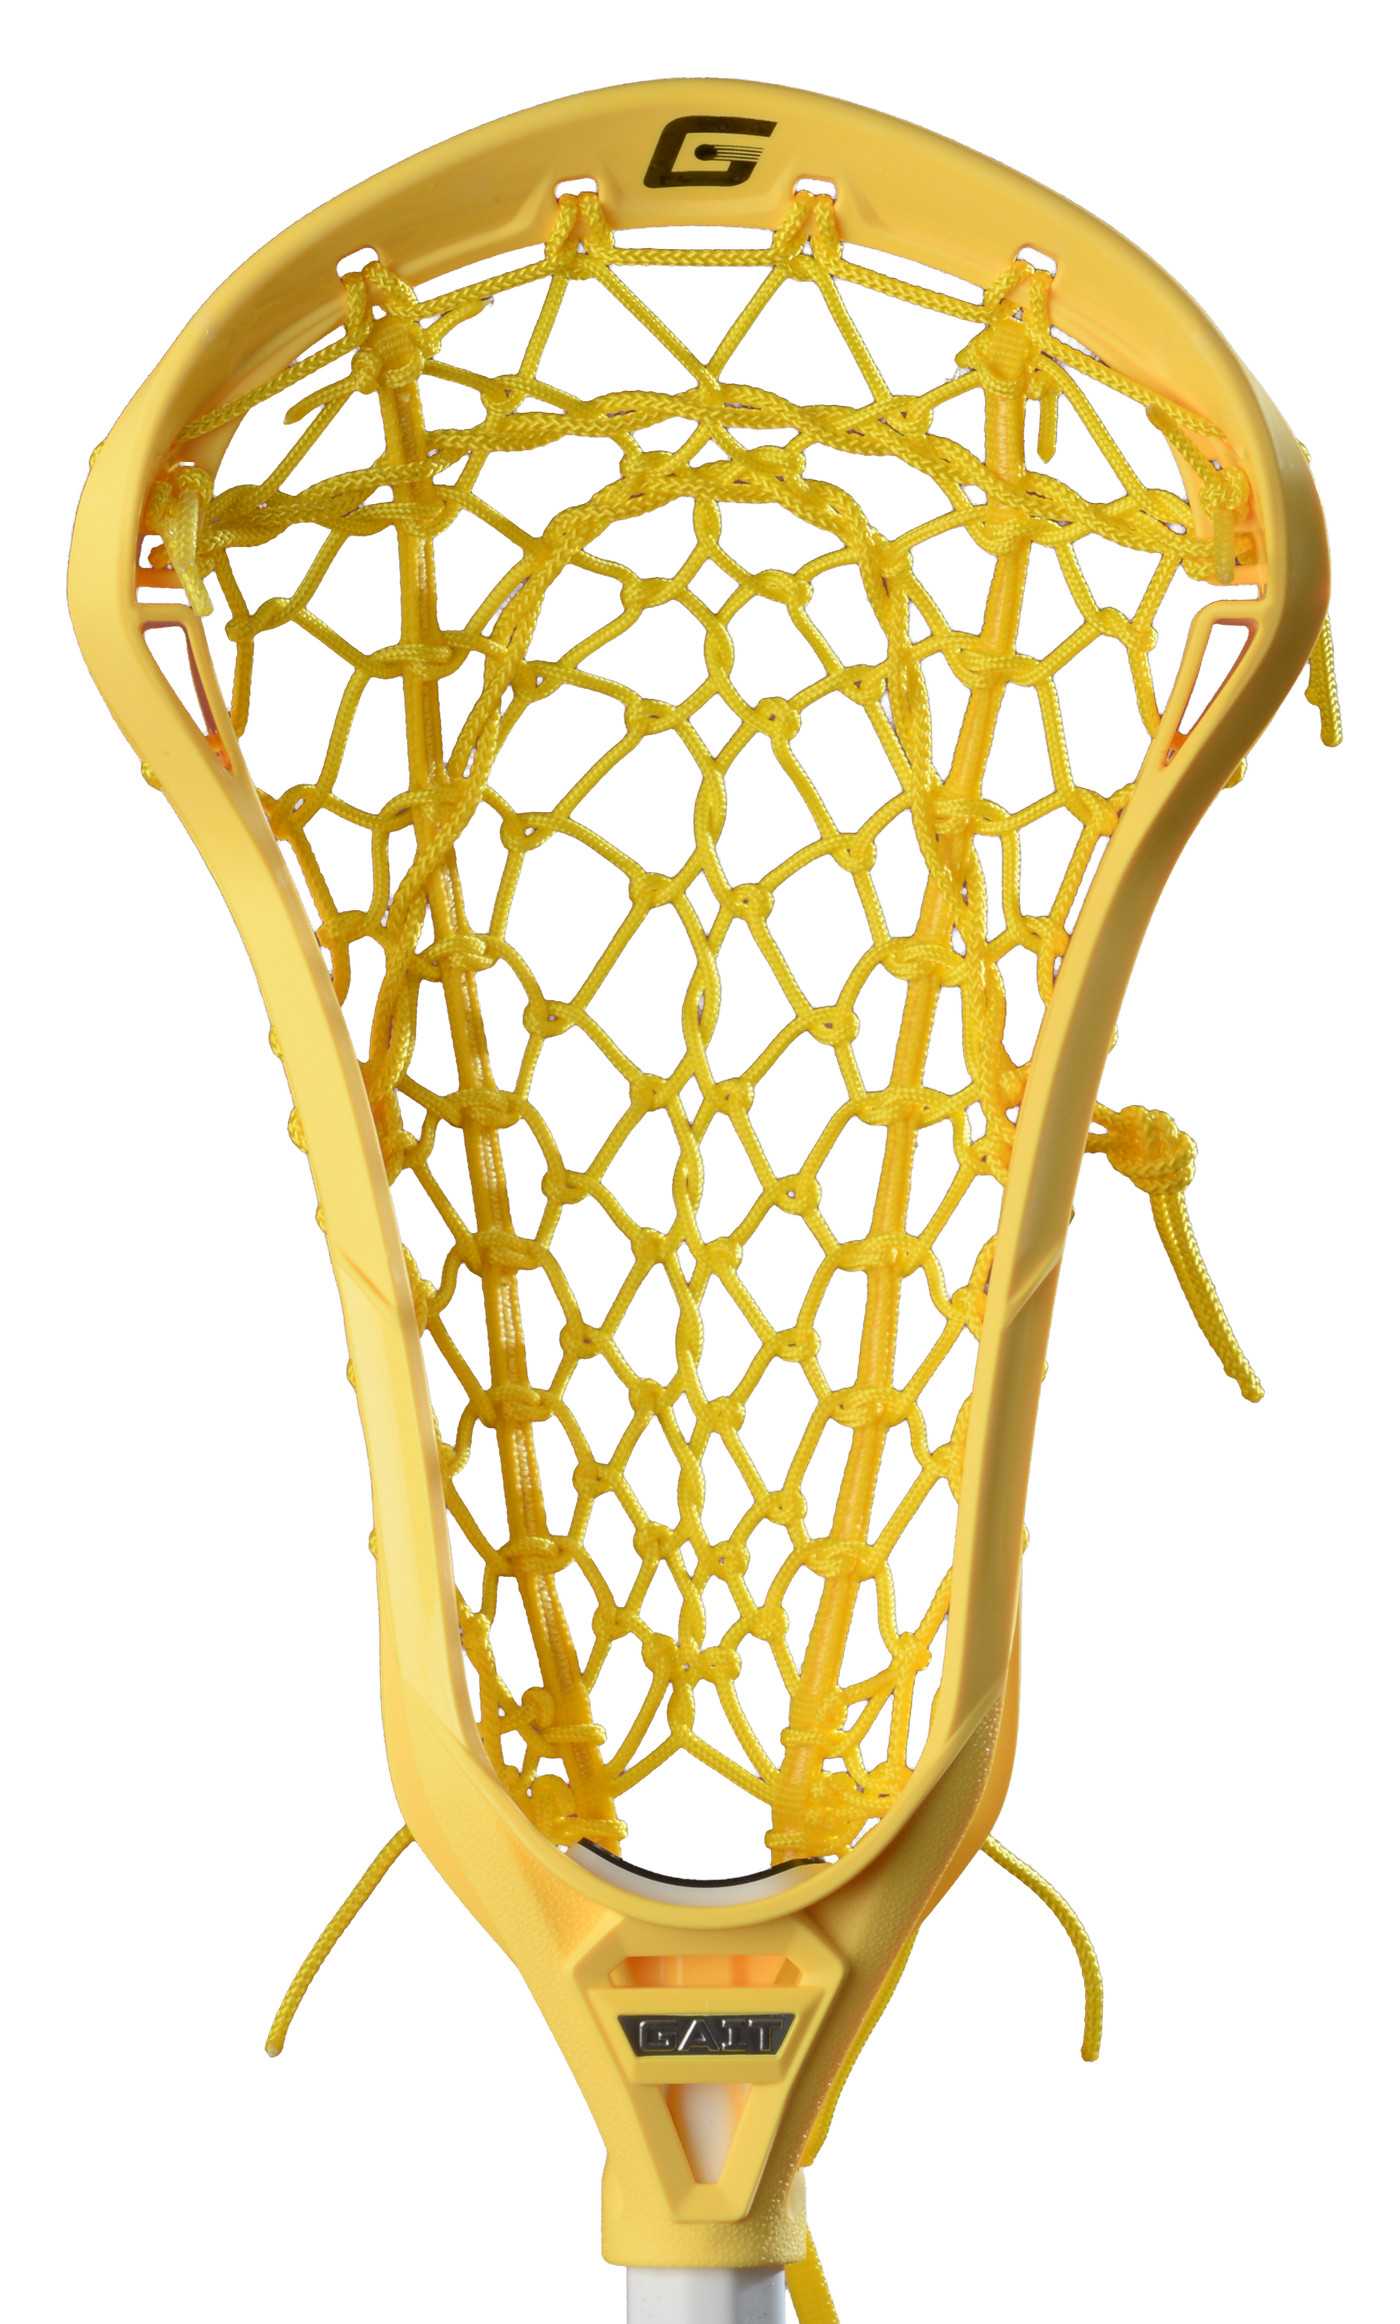 Gait Draw-M Pocket Strung Women's Lacrosse Head - White/Yellow